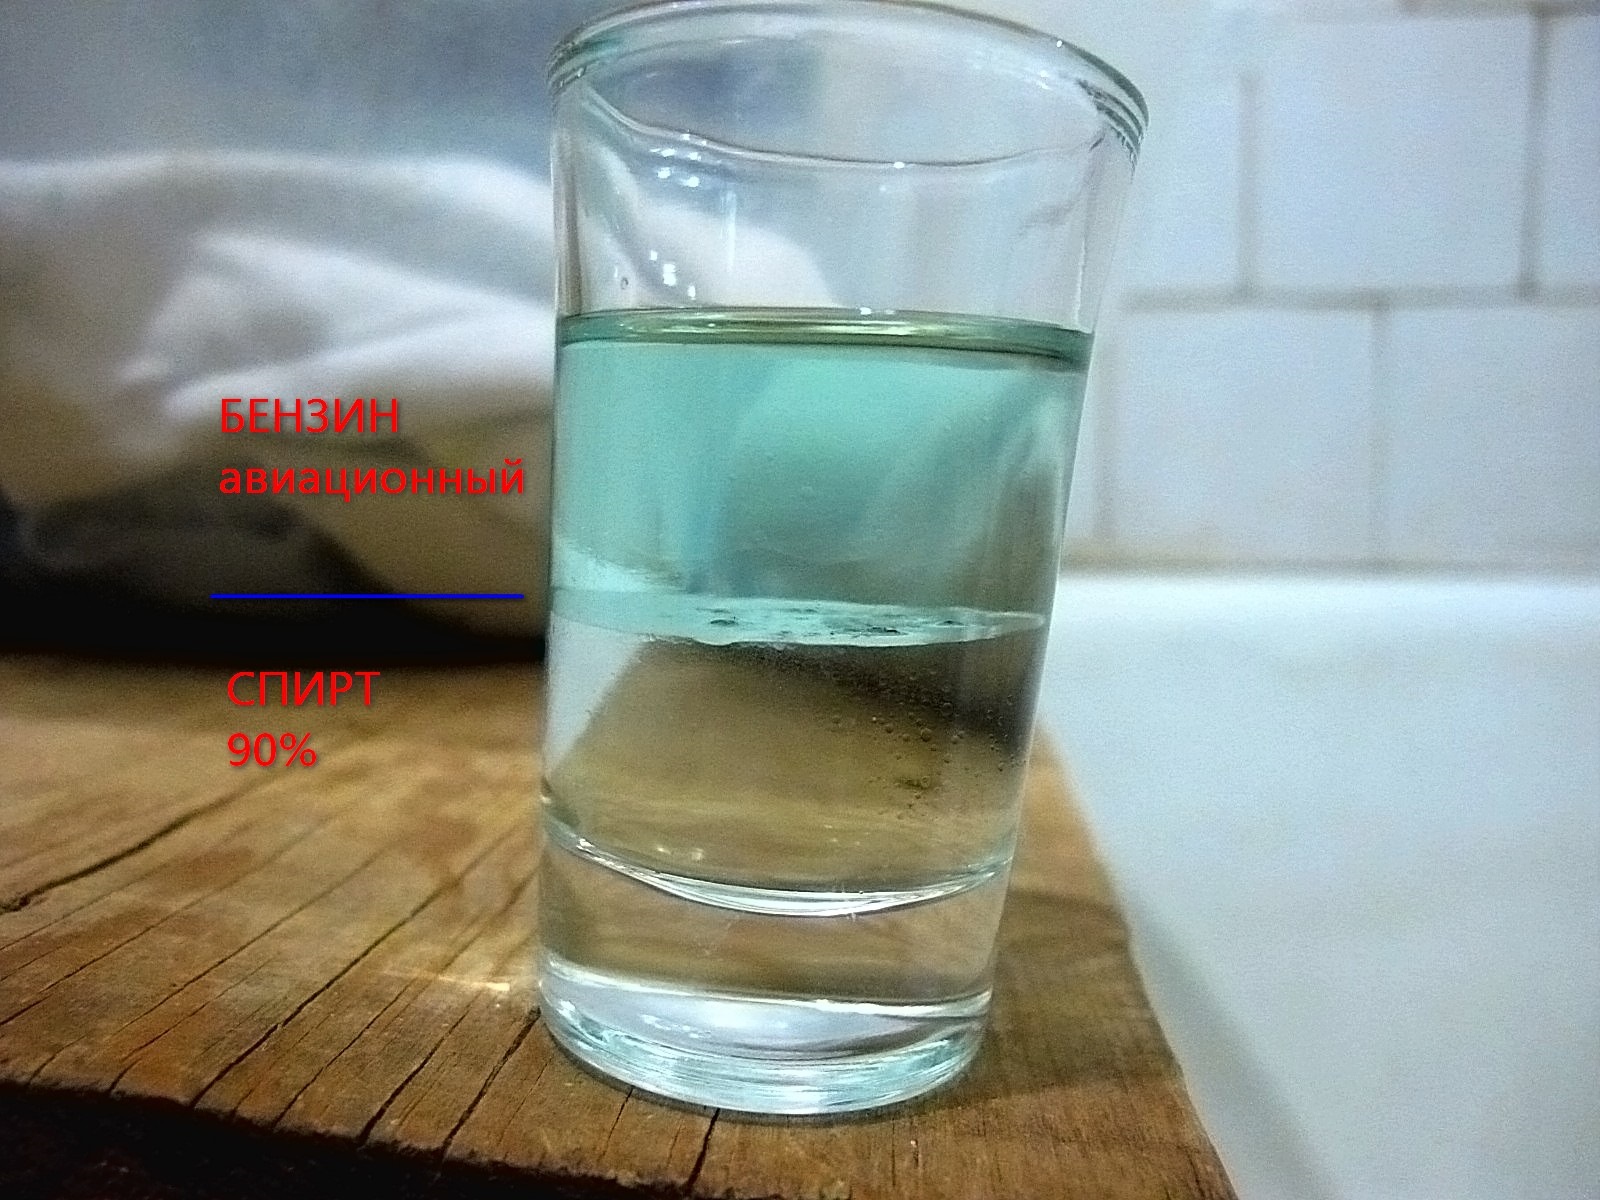 Топливо вода масло. Бензин в воде. Бензин в стакане. Смесь воды и топлива. Керосин растворяется в воде.